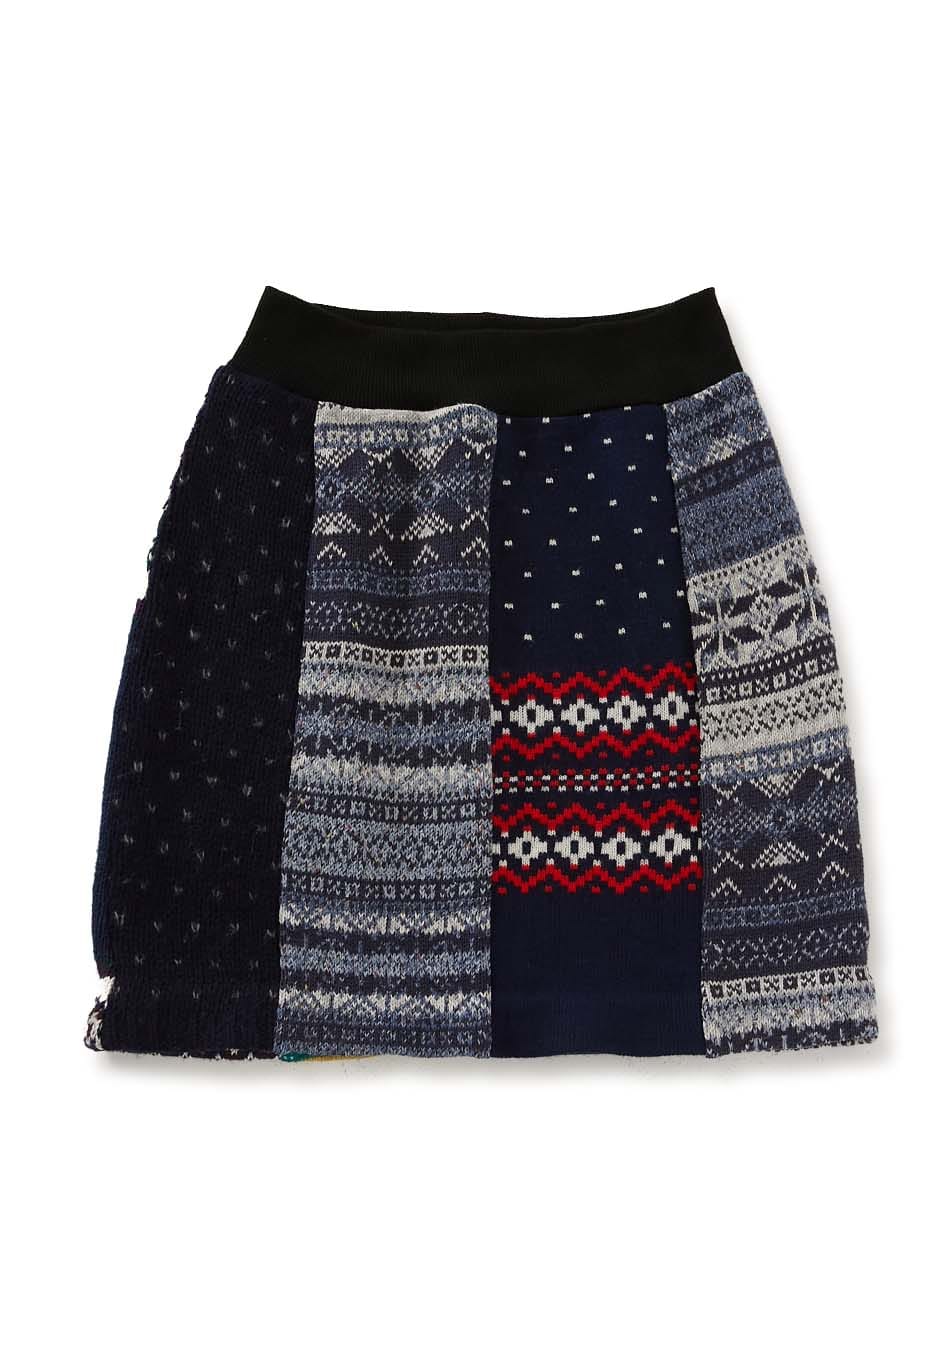 SREU upcycled knit skirt